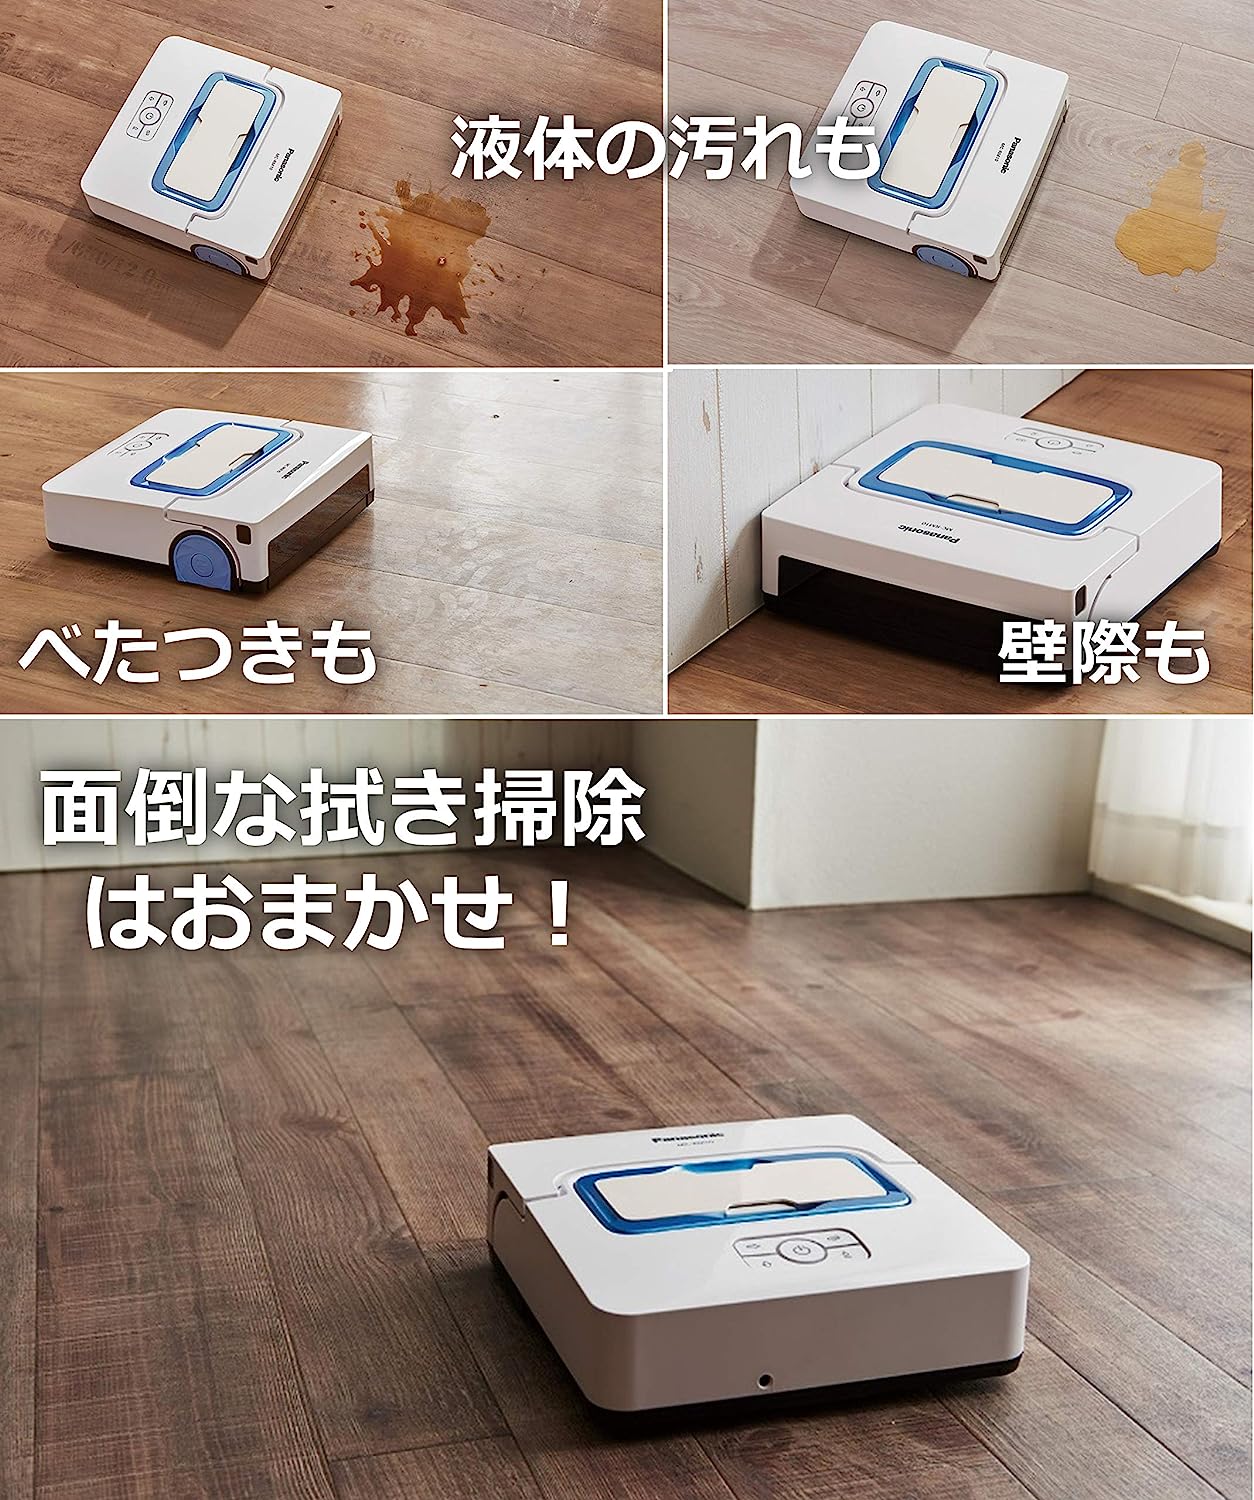 パナソニック 床拭きロボット ロボット掃除機  MC-RM10-W